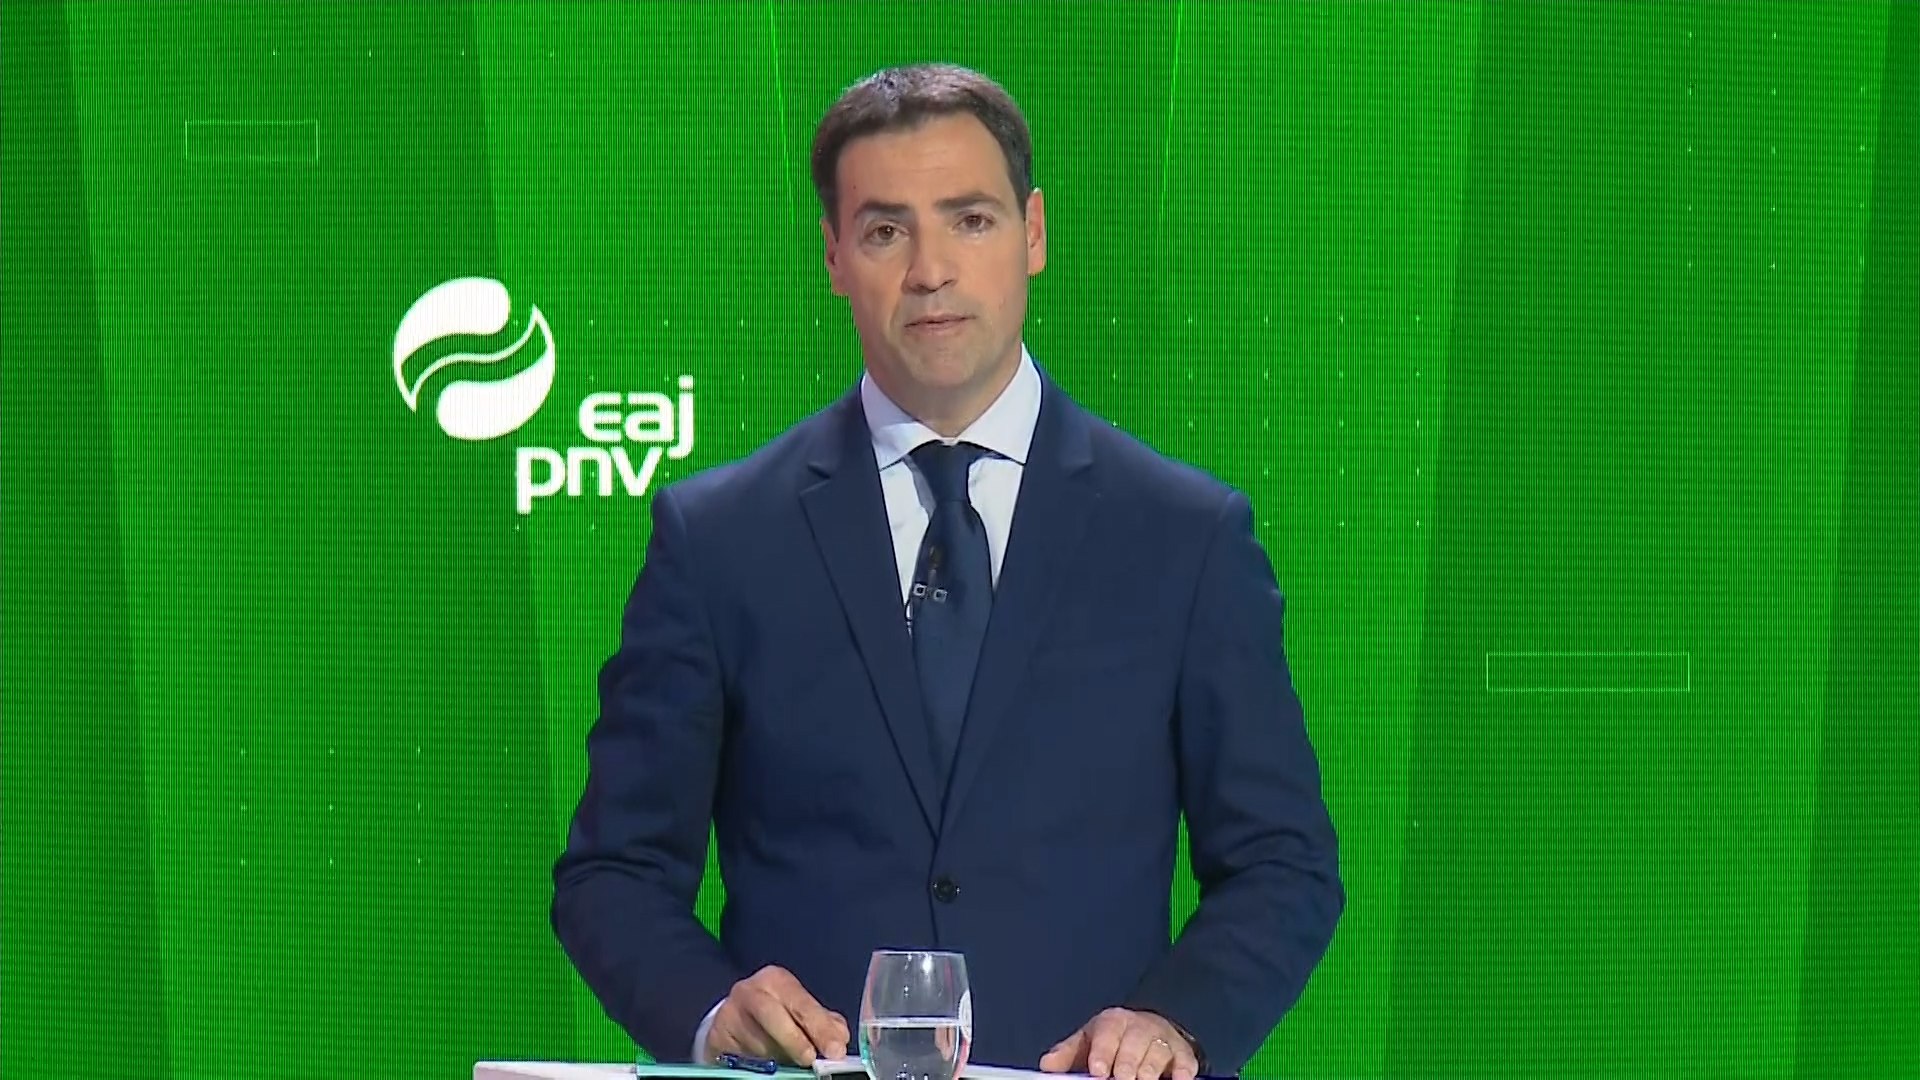 Alegato final del PNV en el debate de las elecciones del Pas Vasco